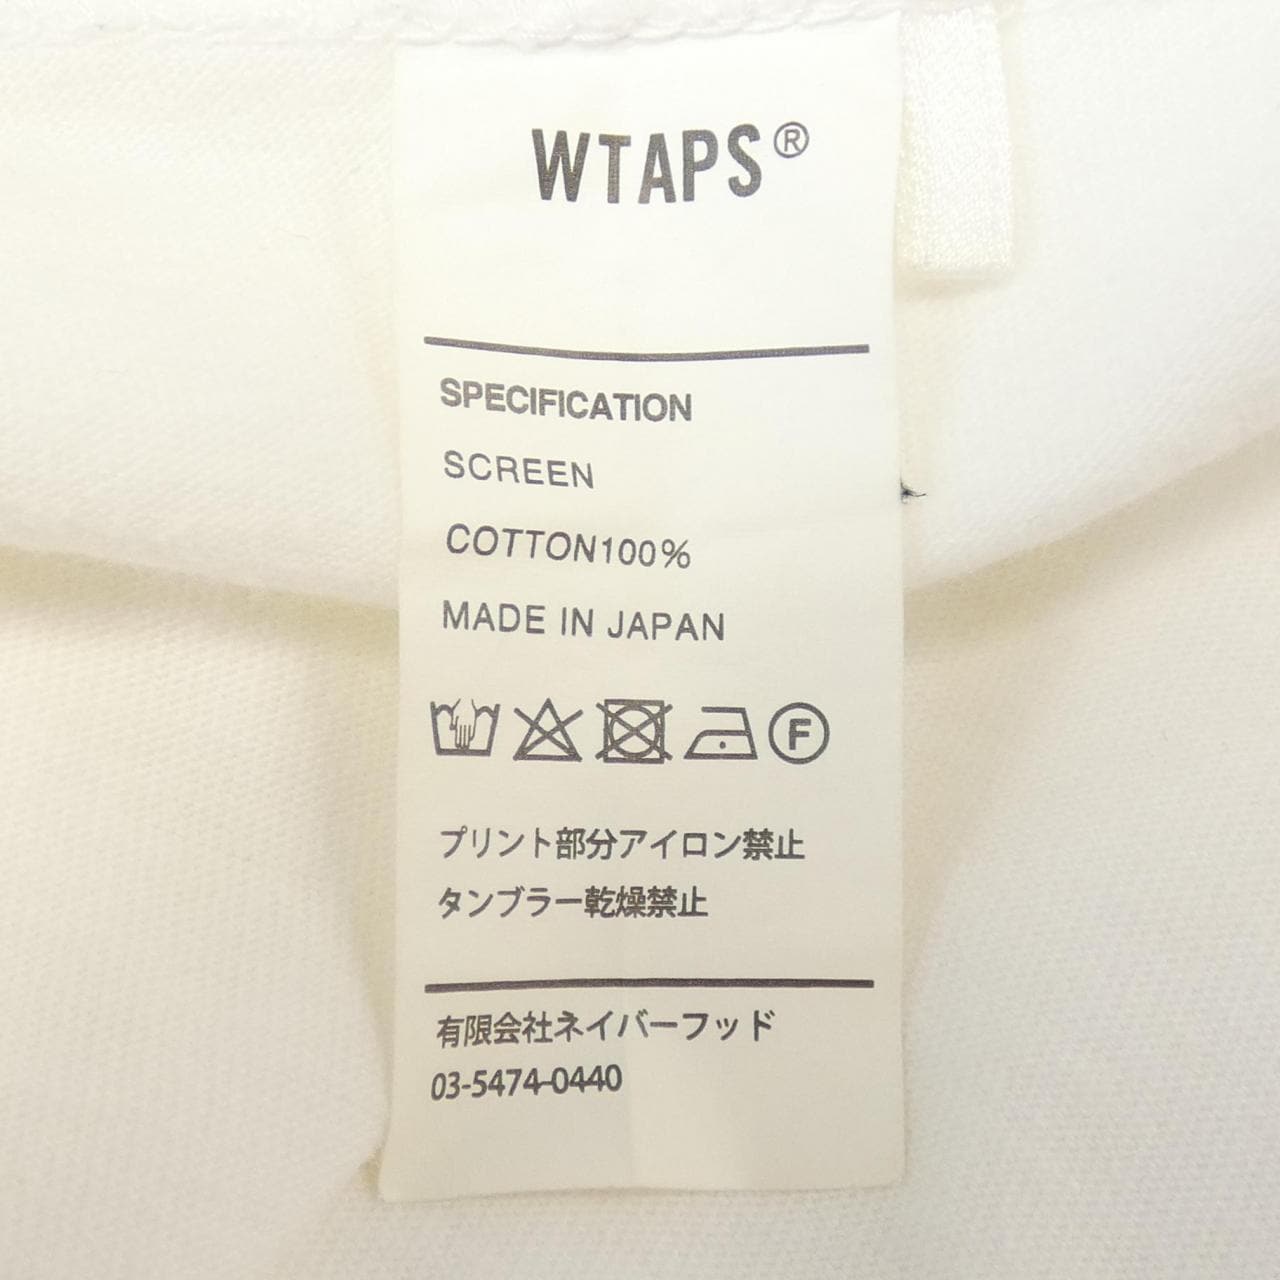 雙層圓頭WTAPS T恤